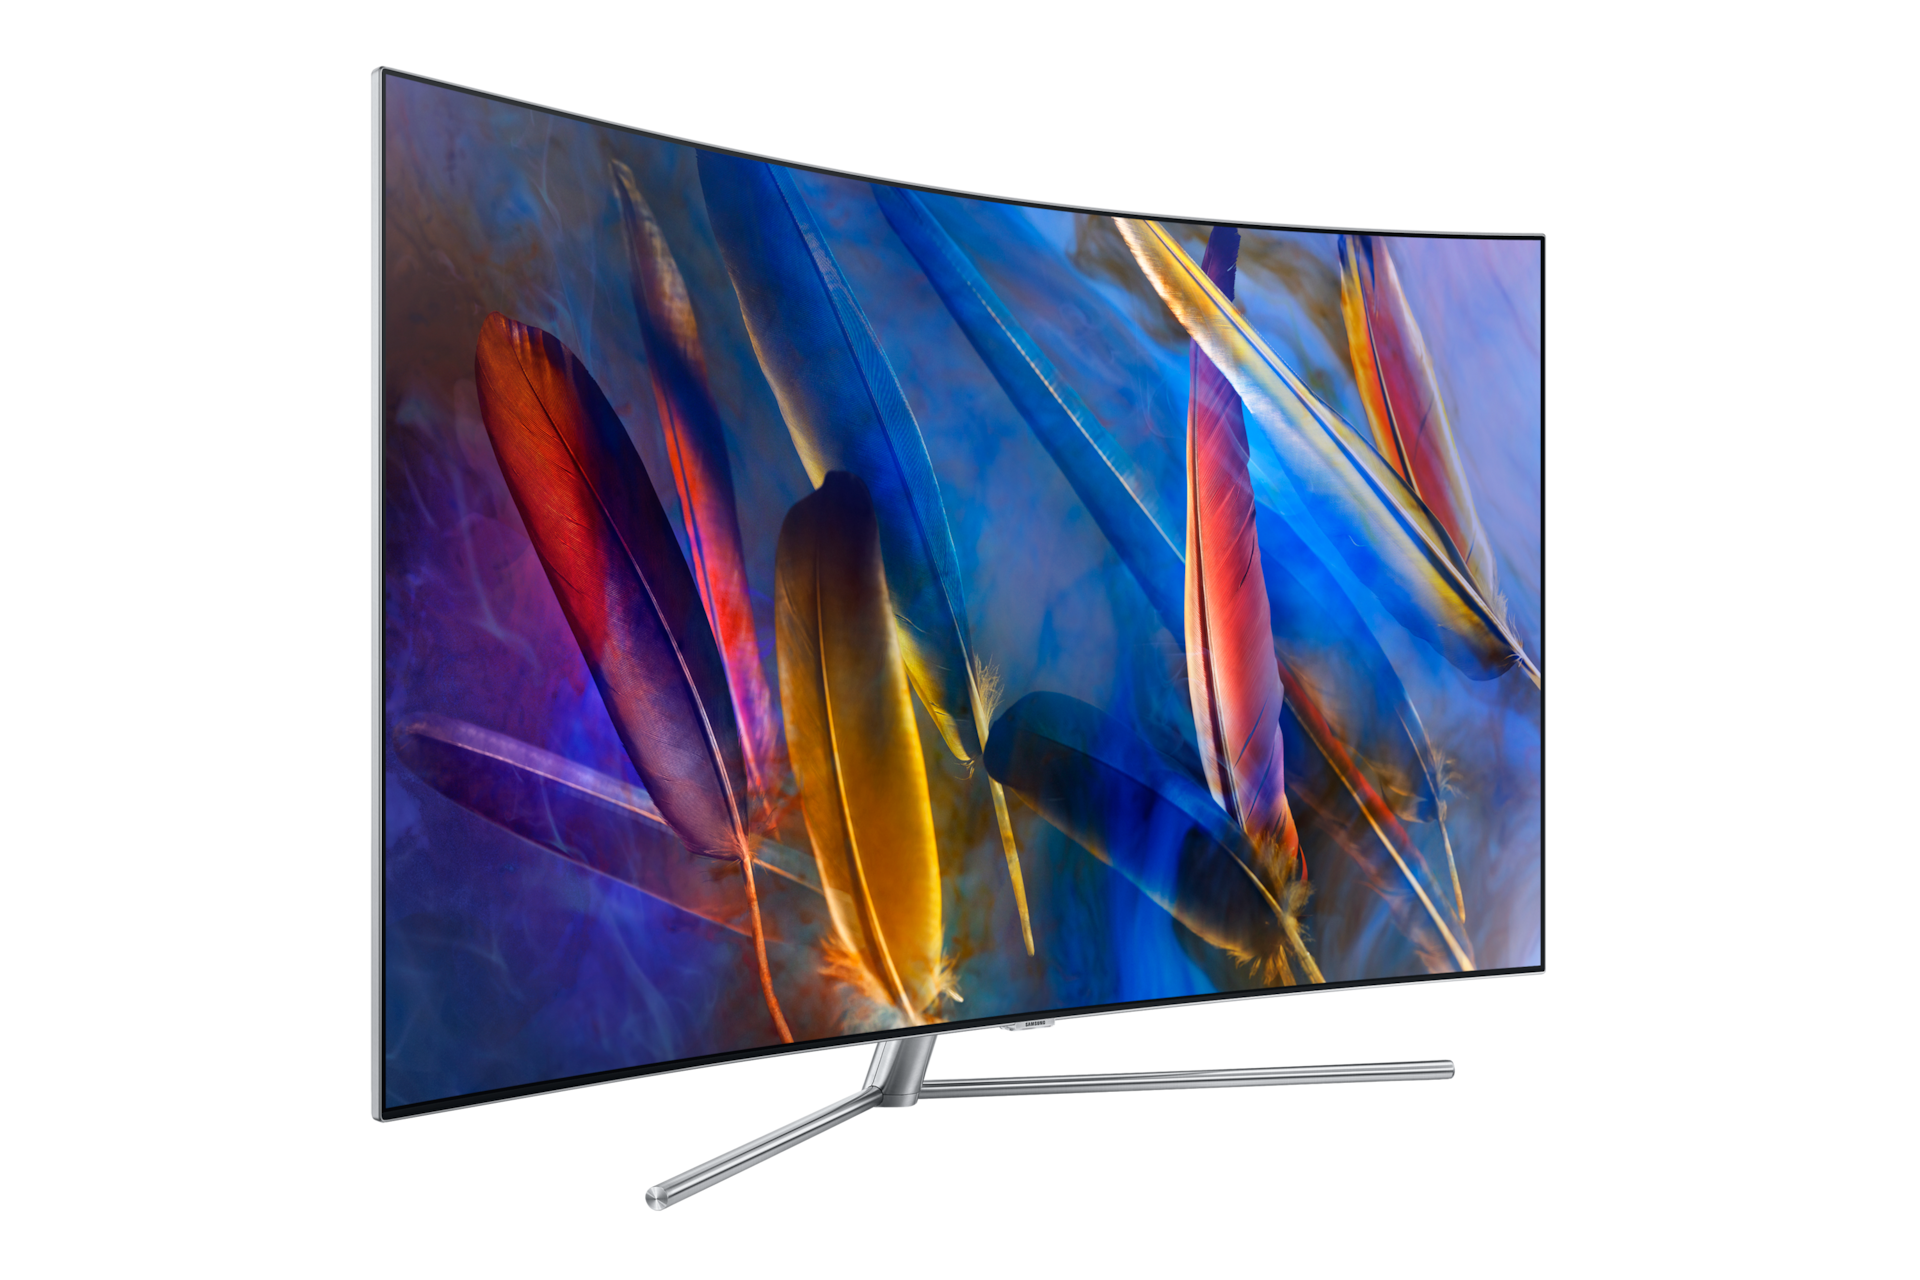 Pantalla Samsung 65 Pulgadas Smart TV Serie QLED a precio de socio